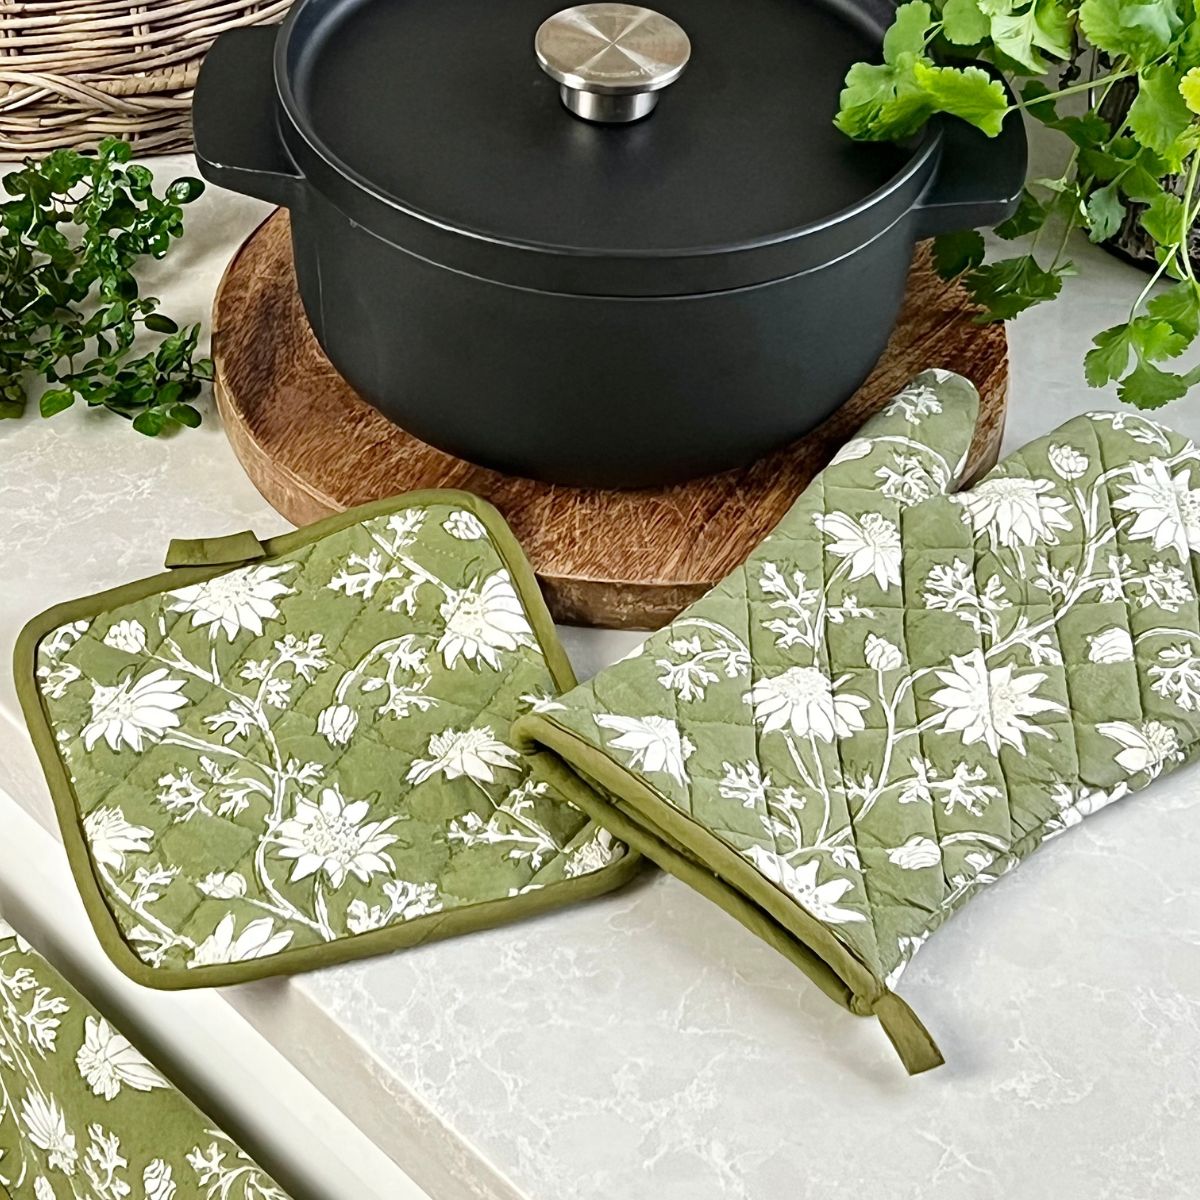 Flannel flower Kitchen Linen  ©